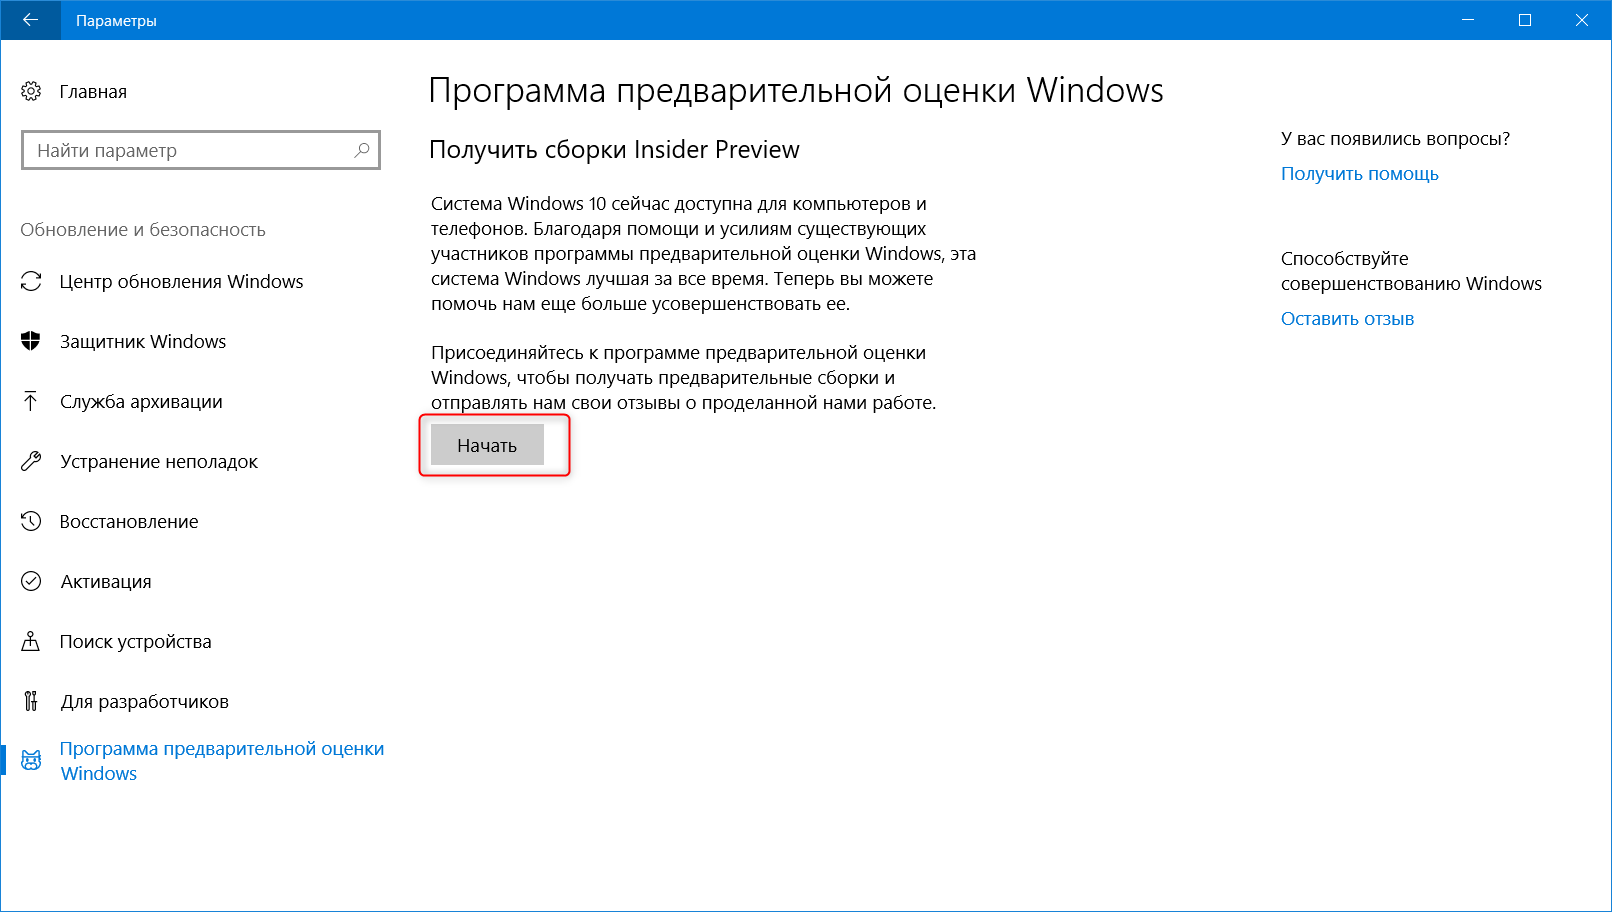 Захват экрана windows 10. Утилита для обновления до Windows 10. Программа предварительной оценки Windows 10. Windows 10 по оценке критиков.